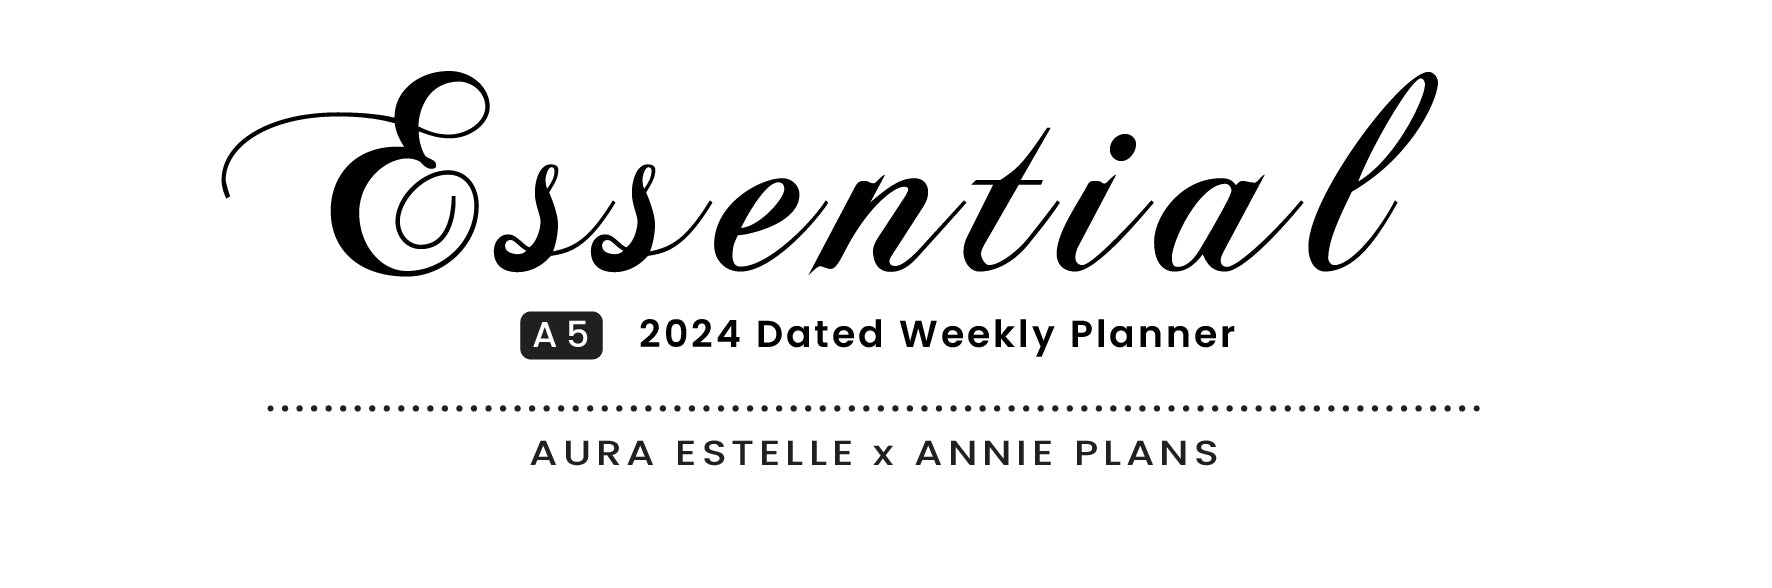 aura_estelle_annie_plans_a5_essential_weekly_planner_2024